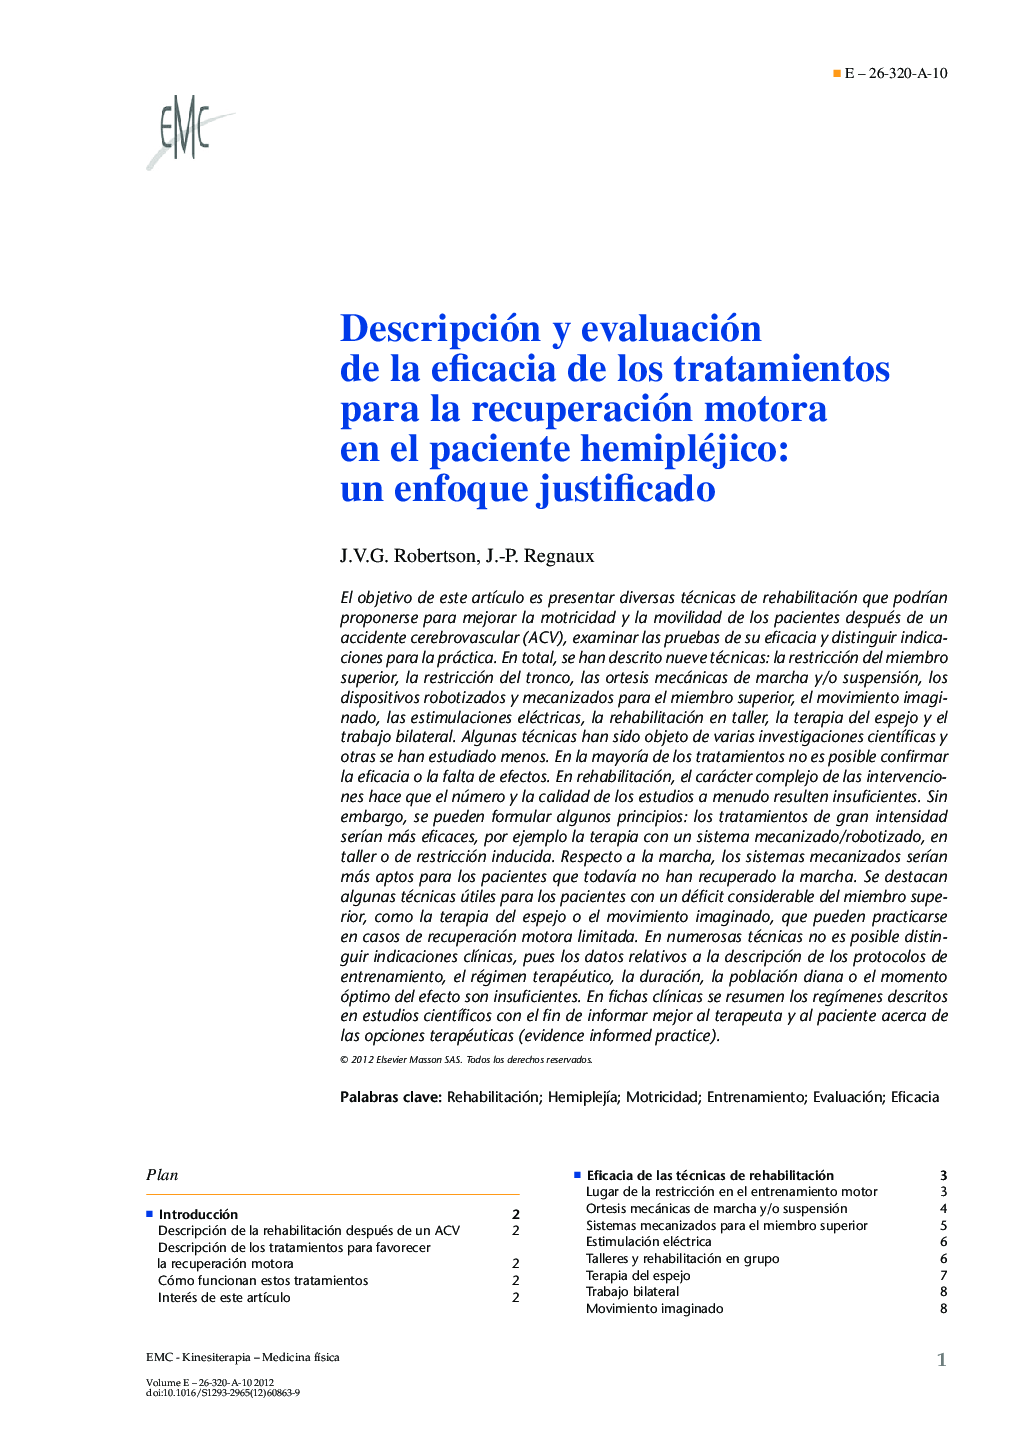 Descripción y evaluación de la eficacia de los tratamientos para la recuperación motora en el paciente hemipléjico: un enfoque justificado